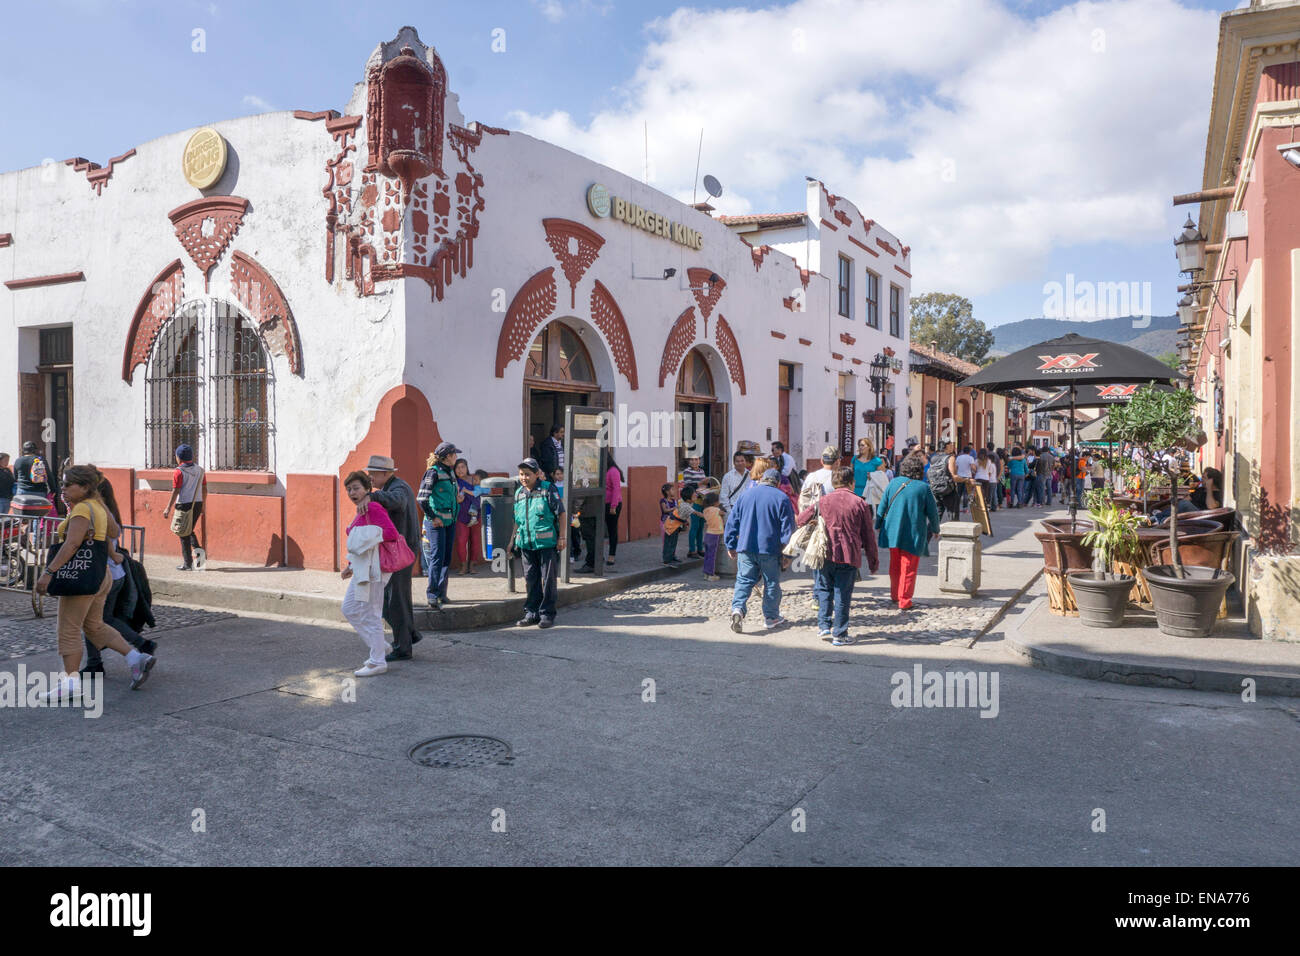 Burger King occupe un bâtiment colonial espagnol sur le coin d'une rue piétonne San Cristobal de las Casas, Chiapas Banque D'Images